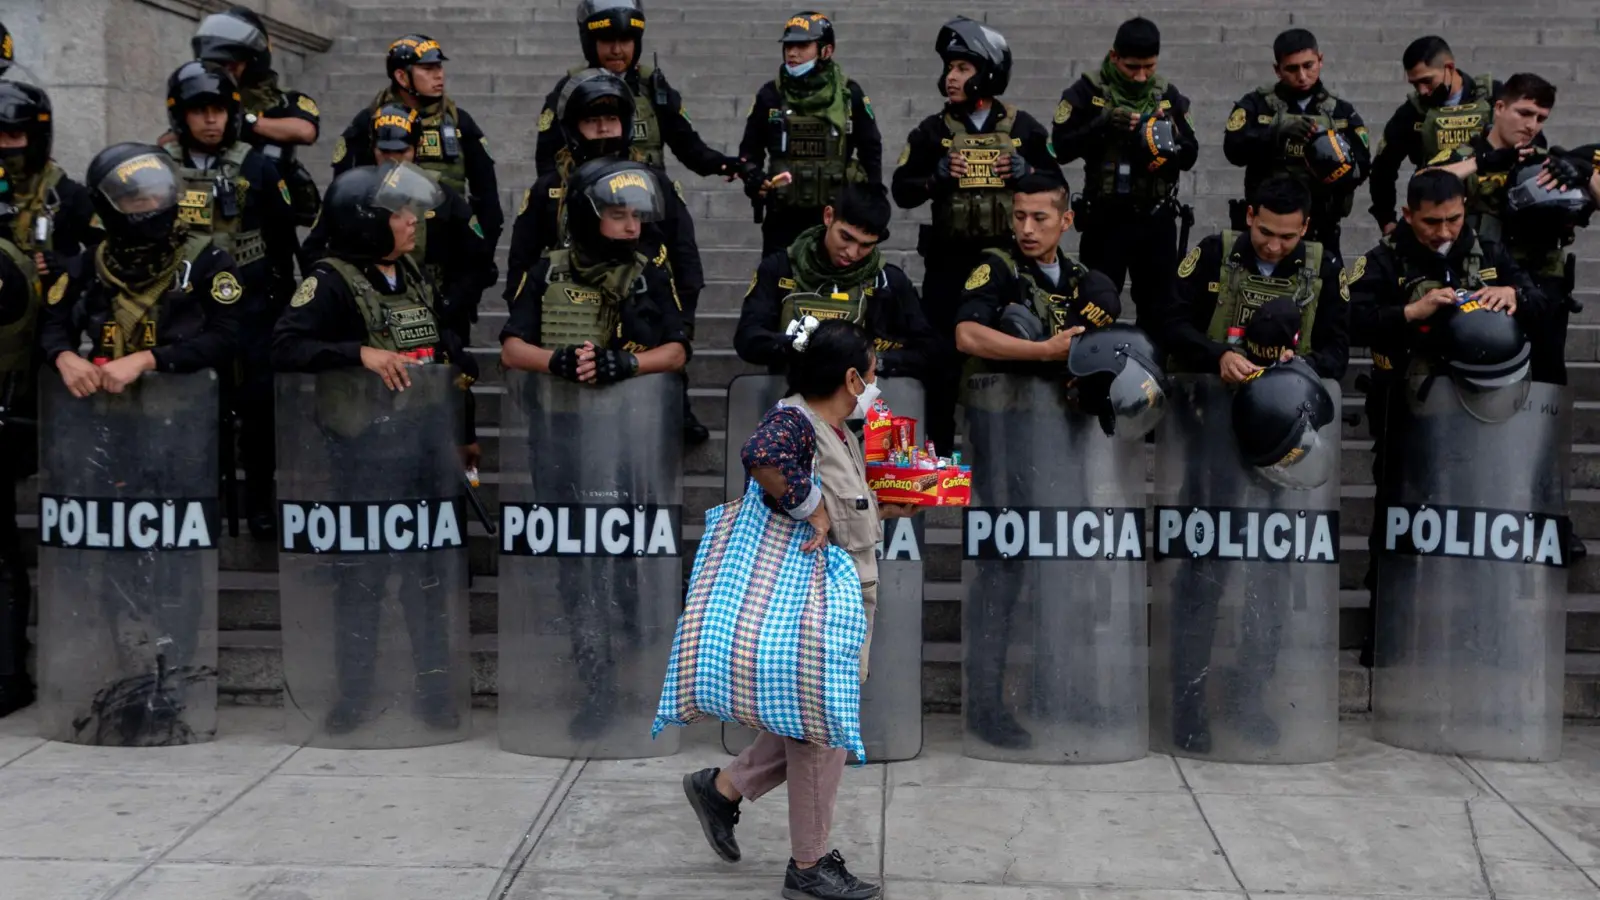 Gegensätze in Perus Hauptstadt Lima: Eine Frau läuft mit Süßigkeiten in der Hand an einer mit Schutzschilden und Helmen ausgestatteten Gruppe von Polizisten vorüber. (Foto: Lucas Aguayo Araos/dpa)